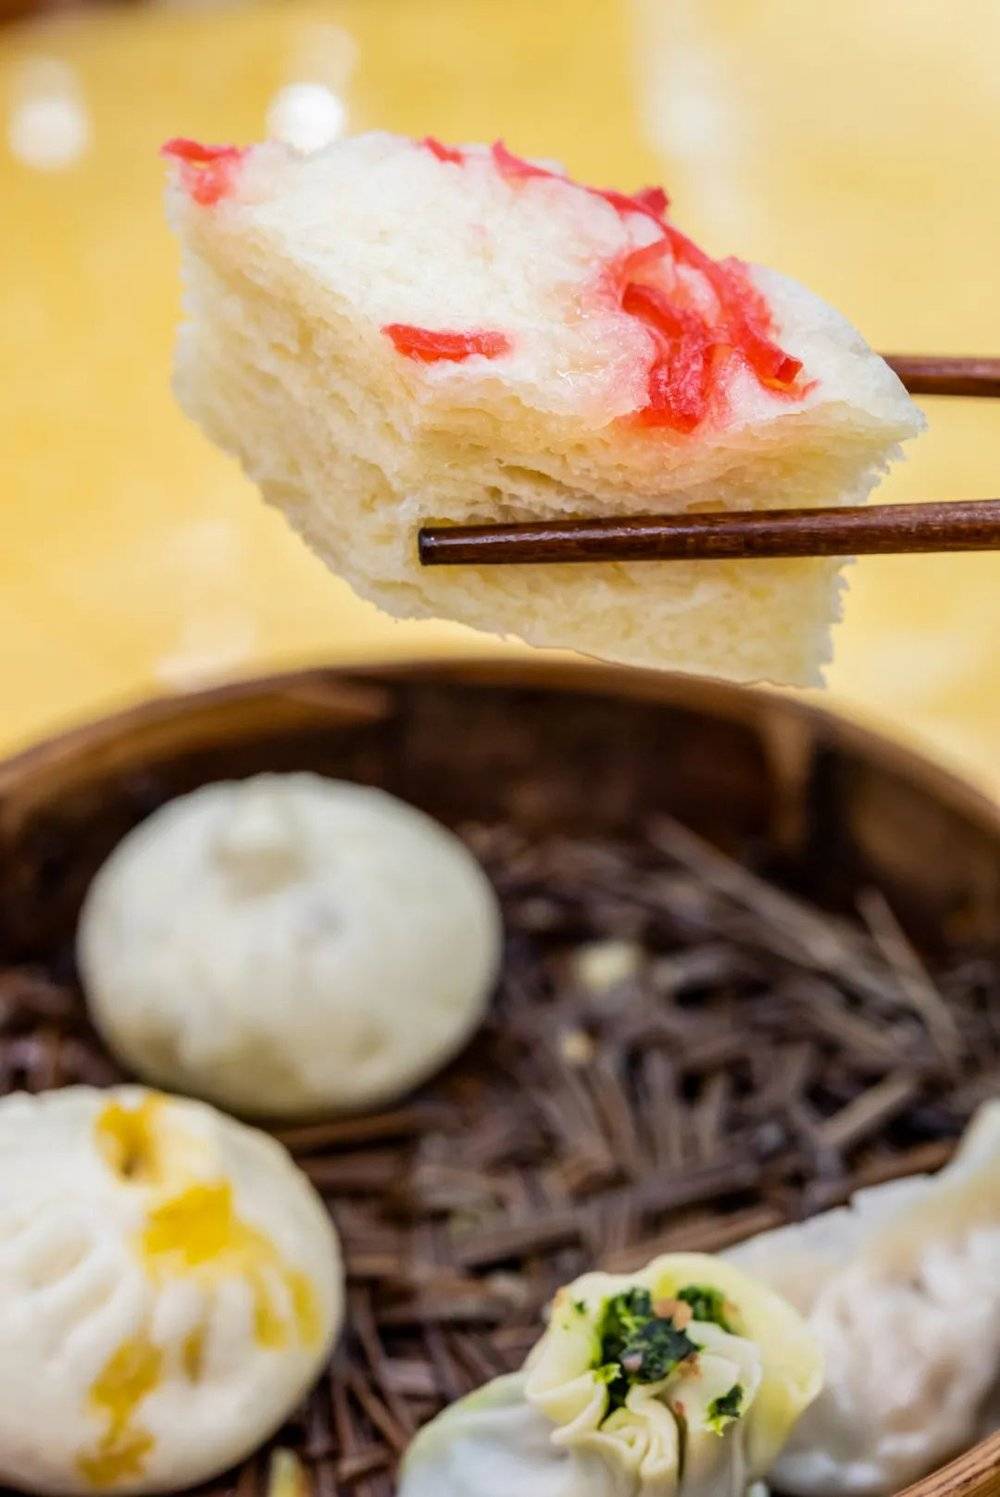 千层油糕和翡翠烧麦，都是扬州早茶的明星单品。<br label=图片备注 class=text-img-note>